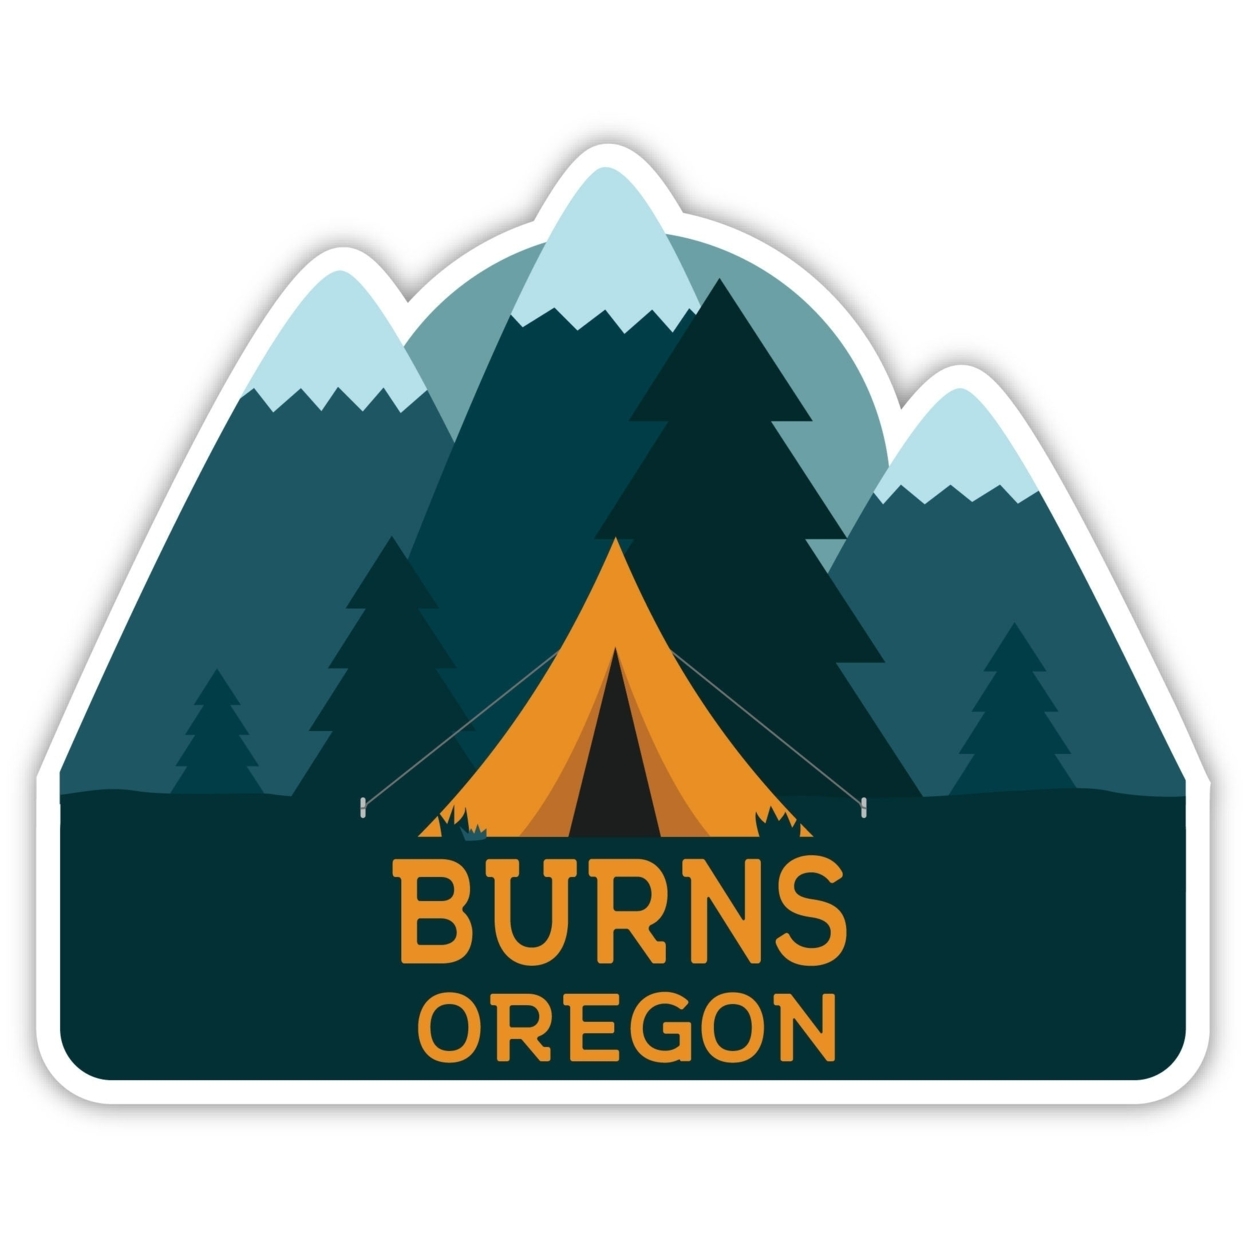 Burns Oregon Souvenir Decorative Stickers (Choose Theme And Size) - Single Unit, 12-Inch, Tent